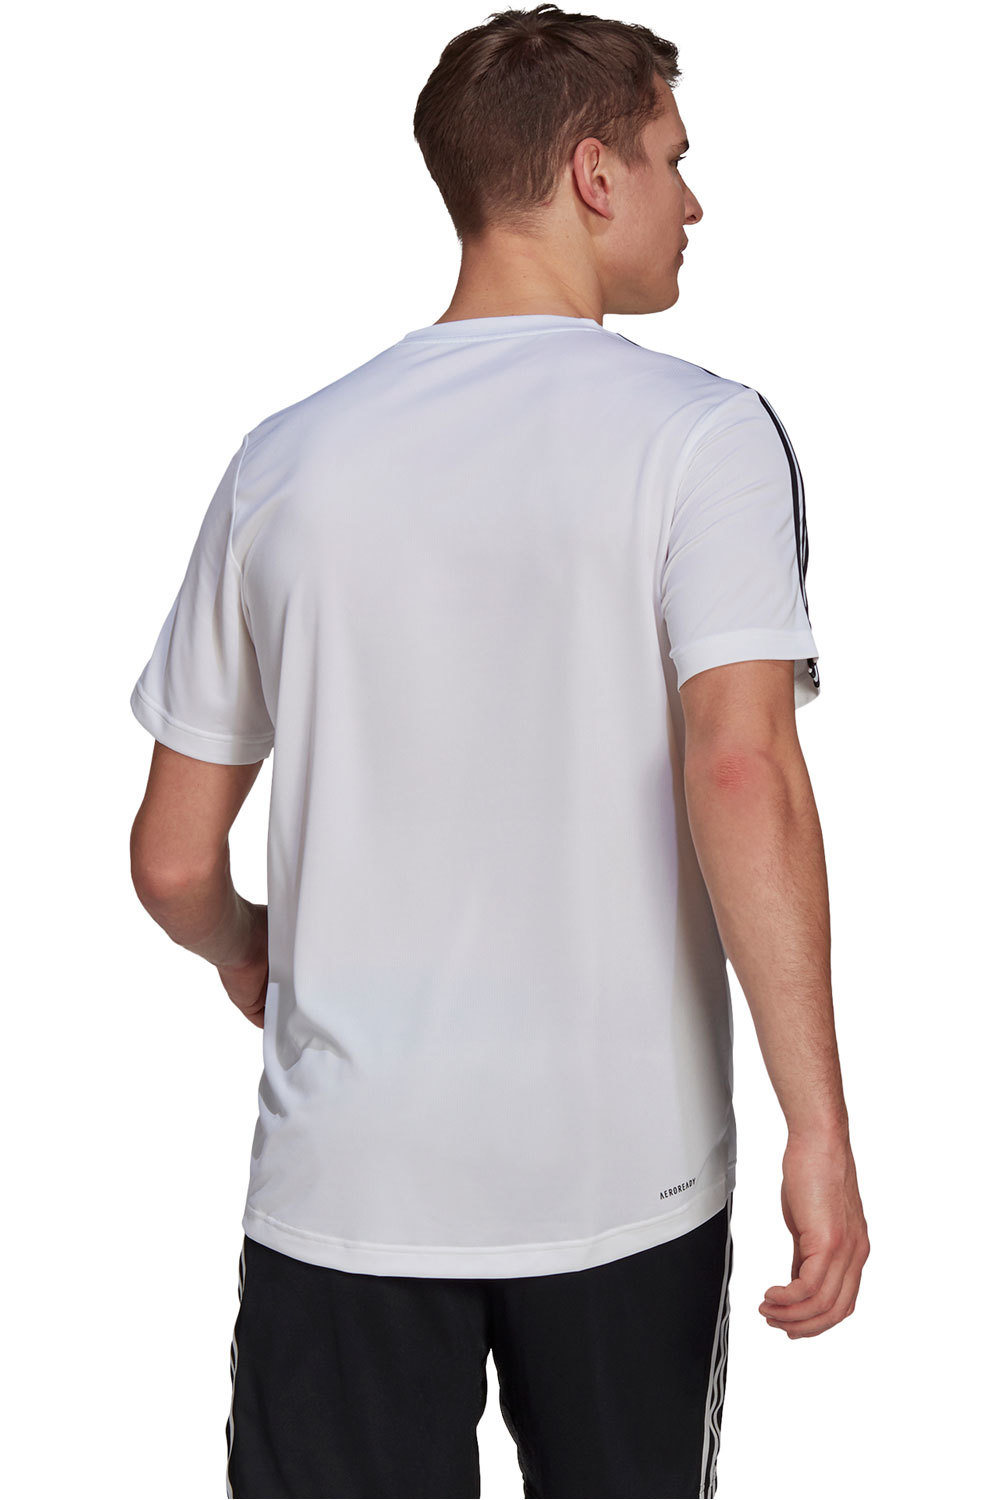 adidas camiseta fitness hombre AEROREADY Designed To Move Sport 3 bandas vista trasera